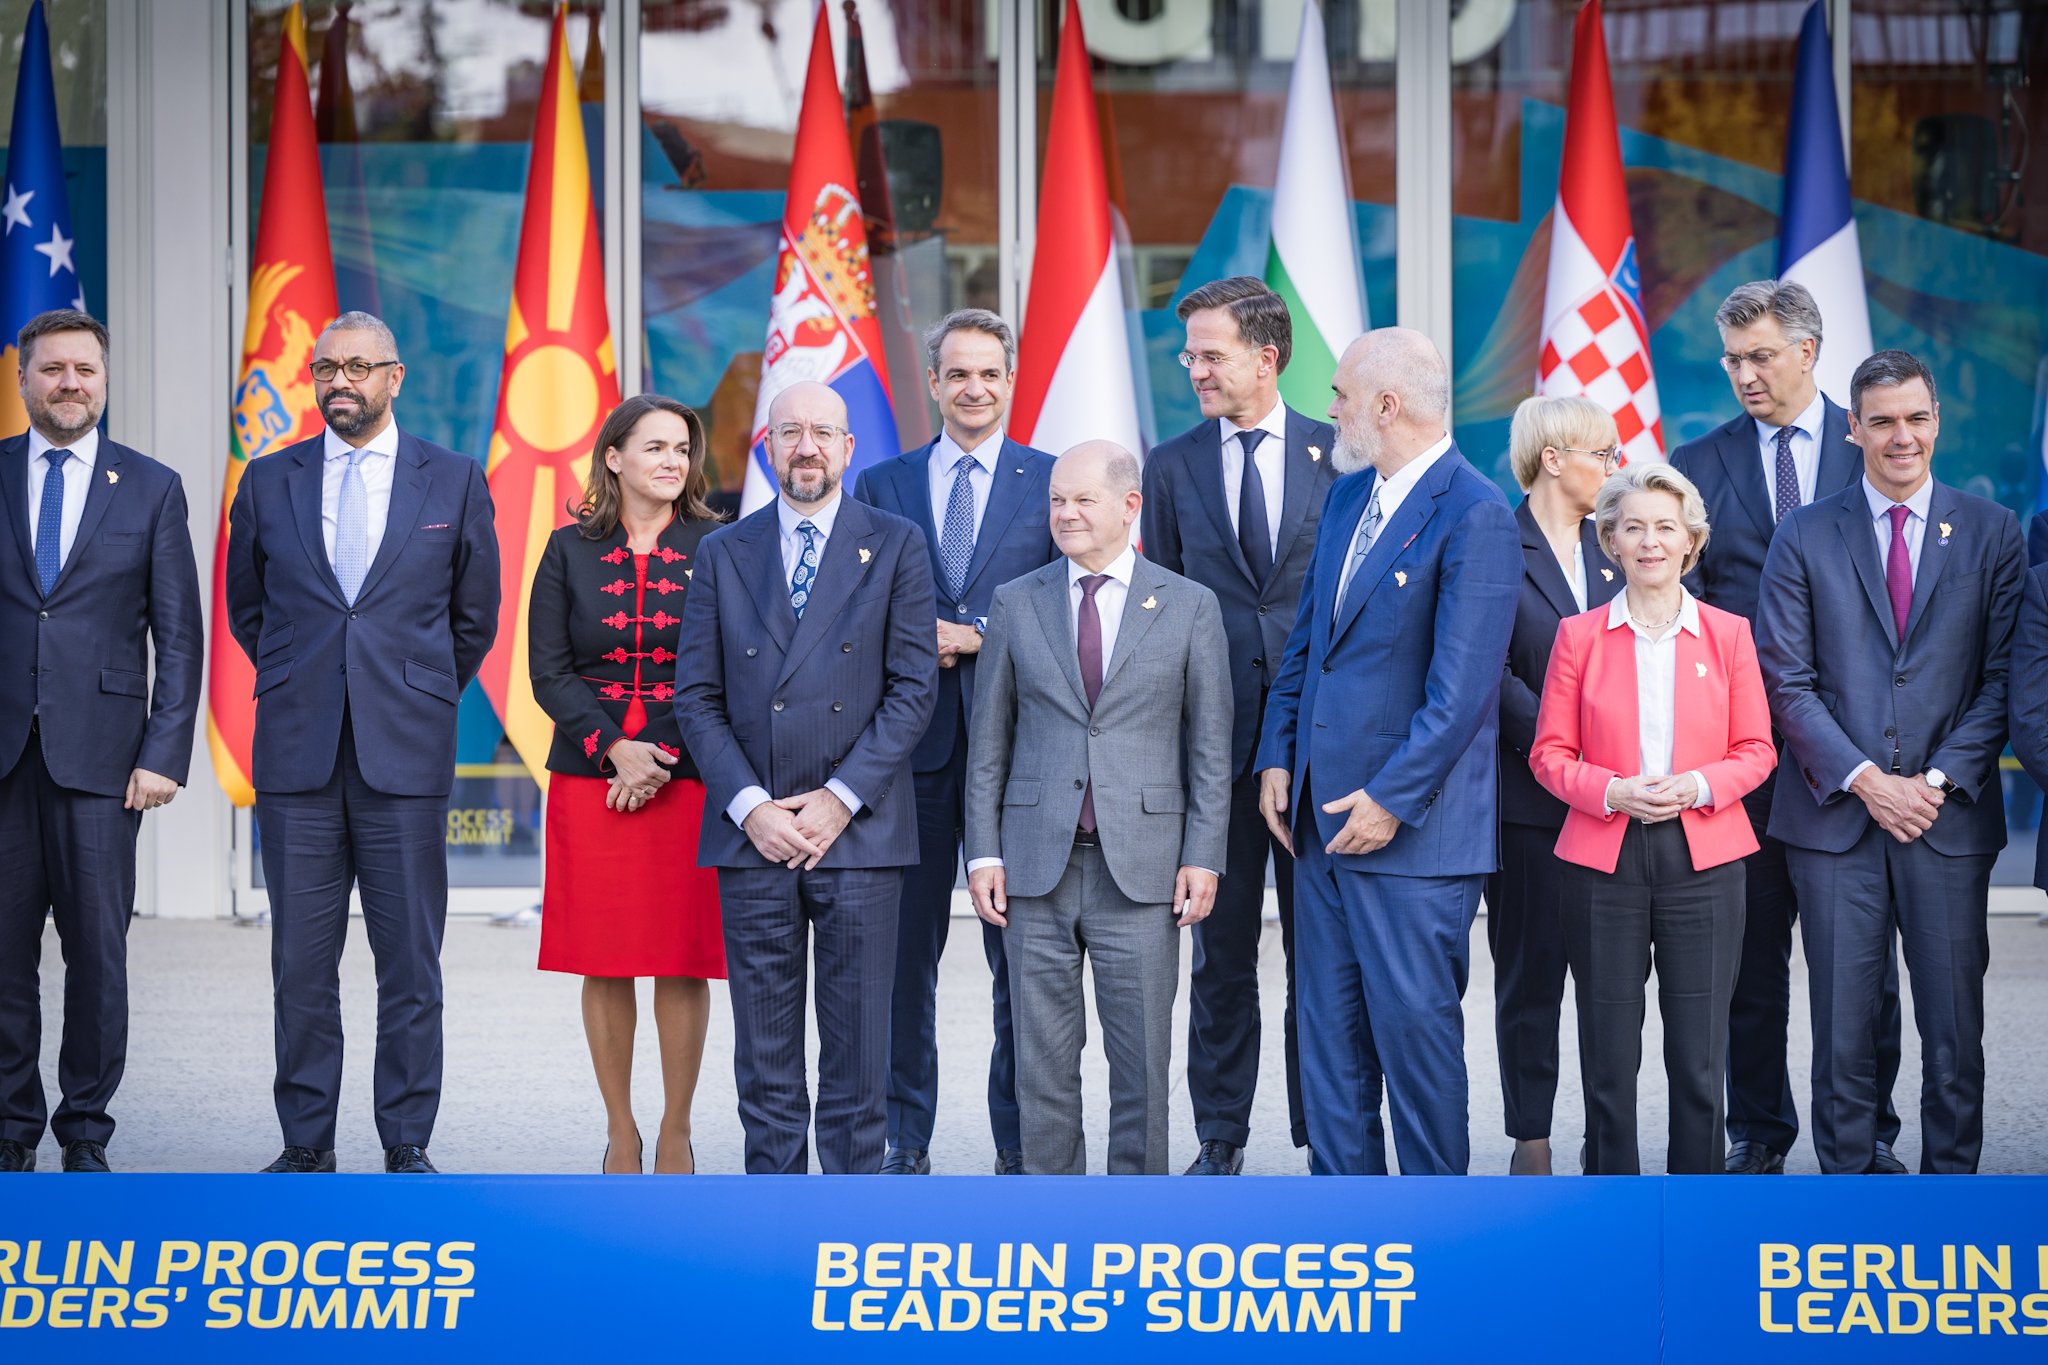 На саміті Берлінського процесу лідери країн Західних Балкан обговорили регіональне співробітництво та євроінтеграцію